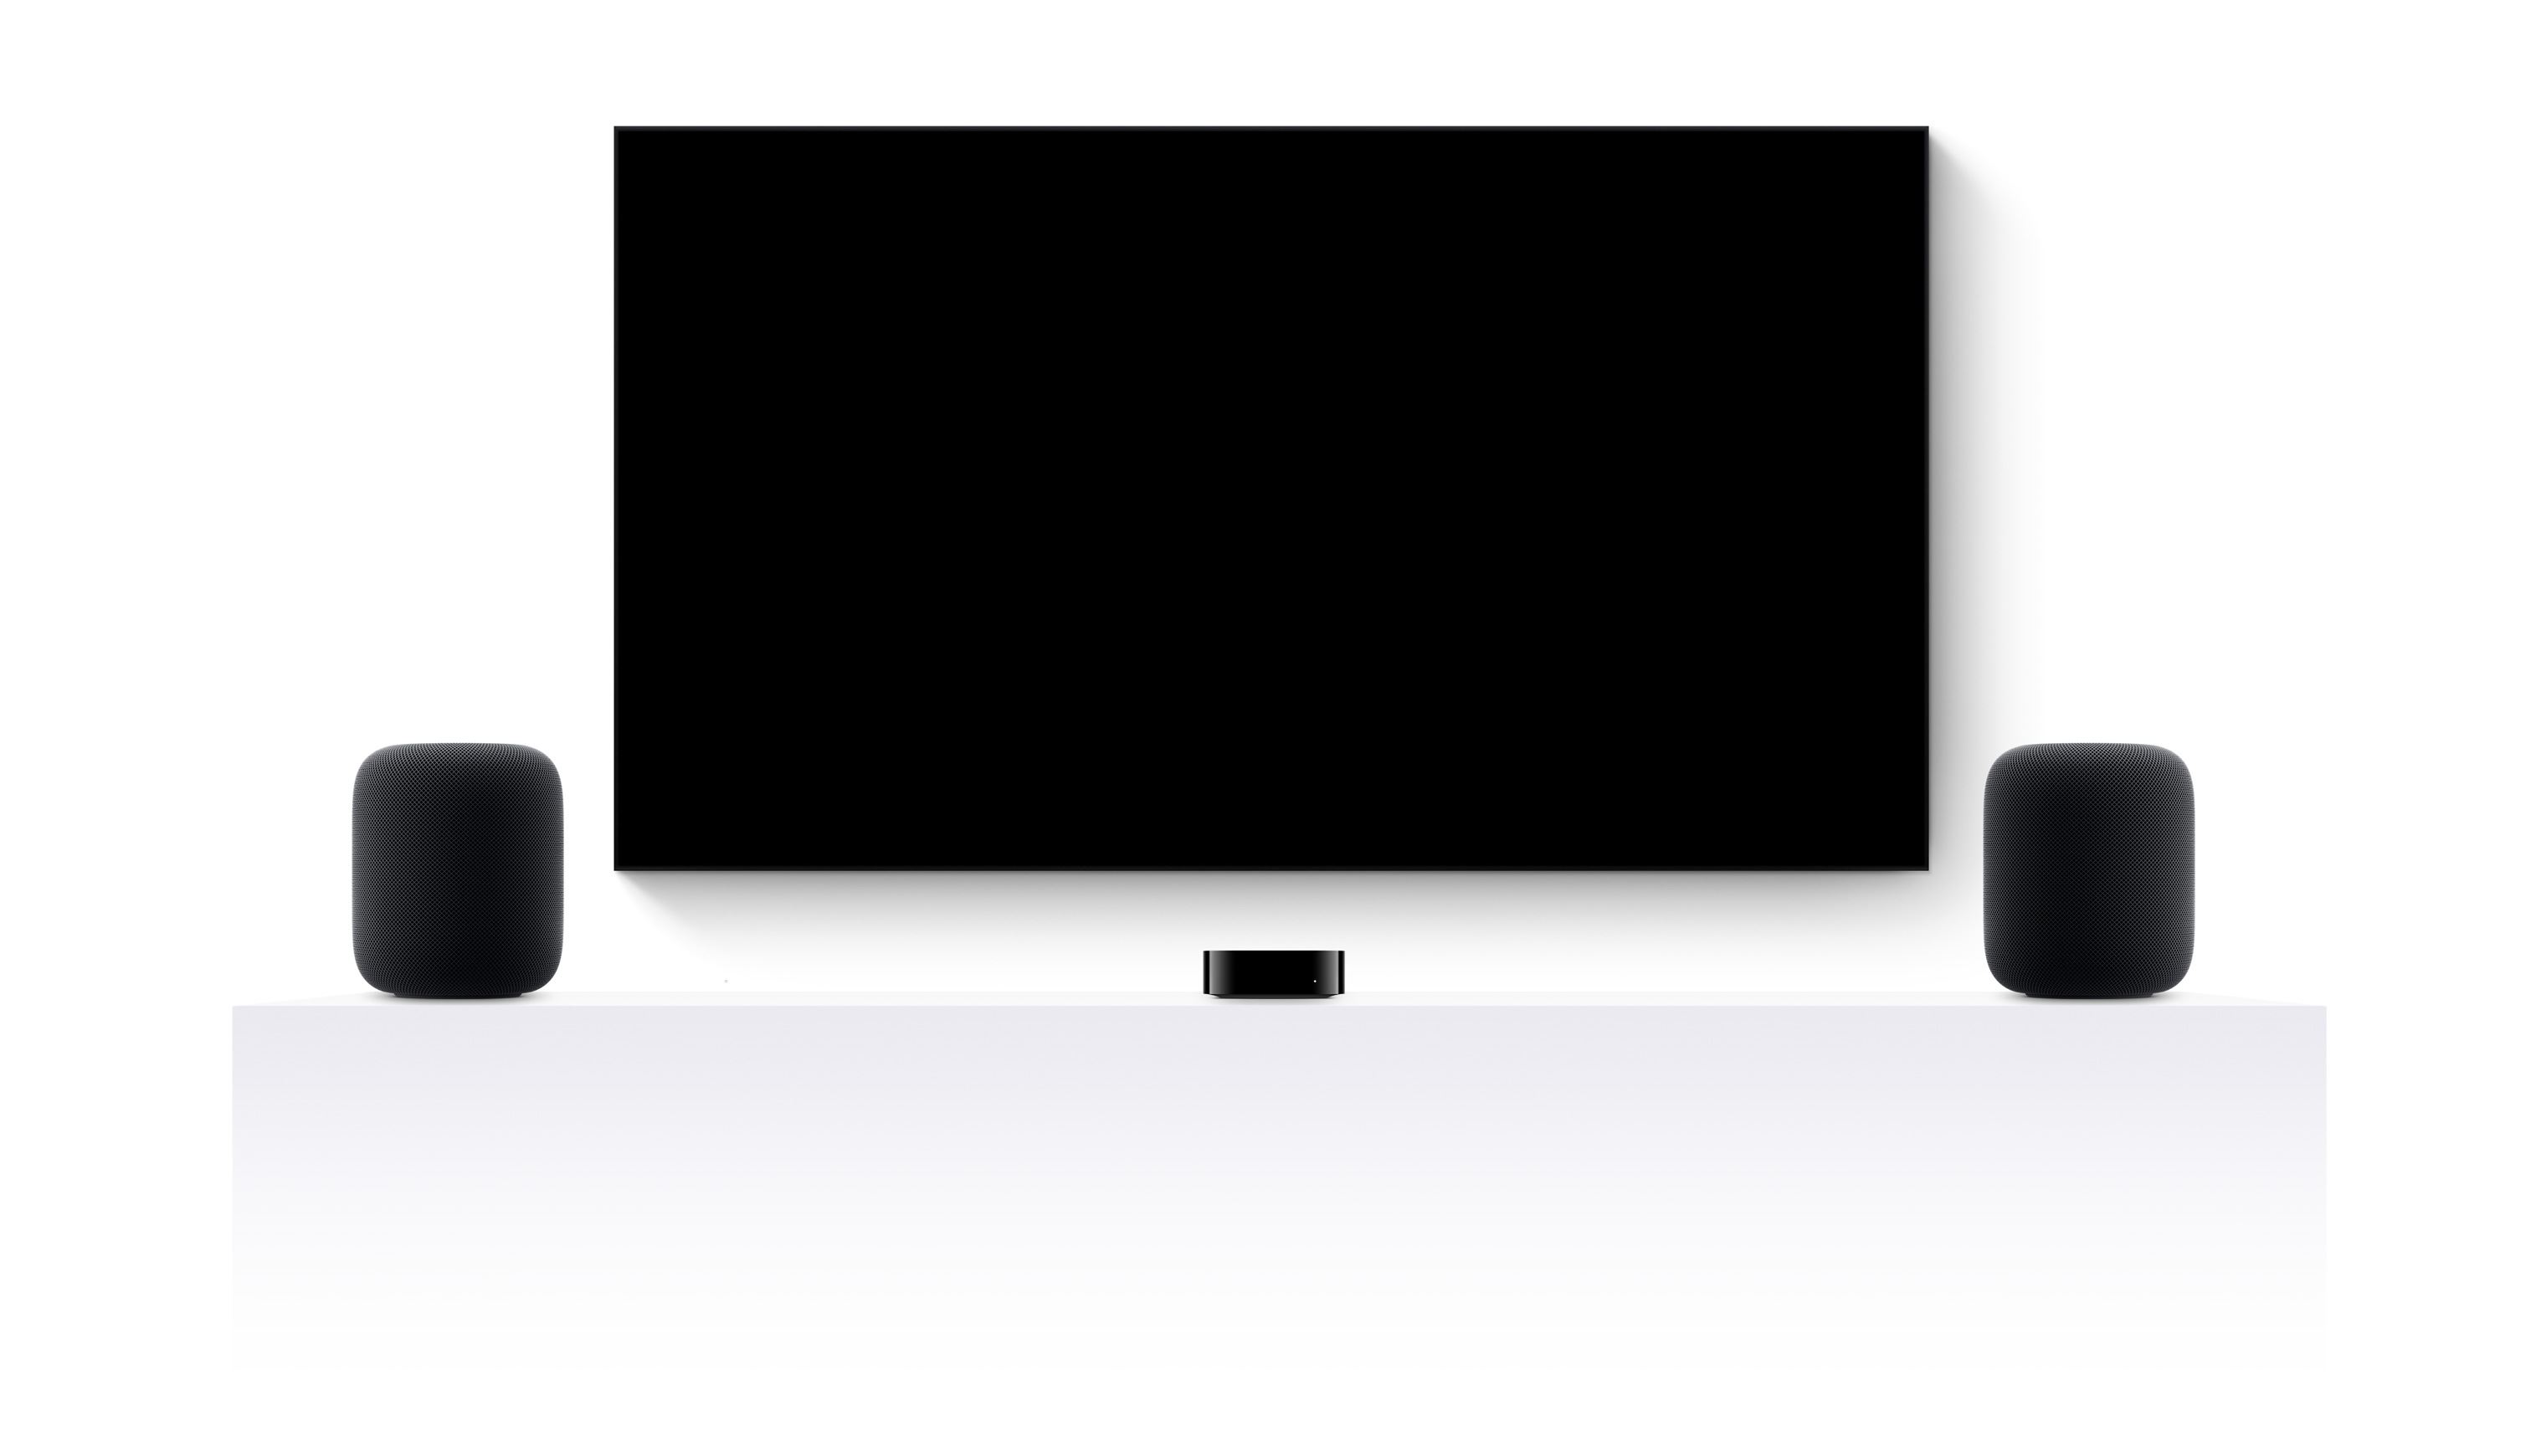 戦国 カグラ スロット TV 4k, two HomePods, and a flatscreen television showing an edited trailer of various 戦国 カグラ スロット TV+ movies and shows